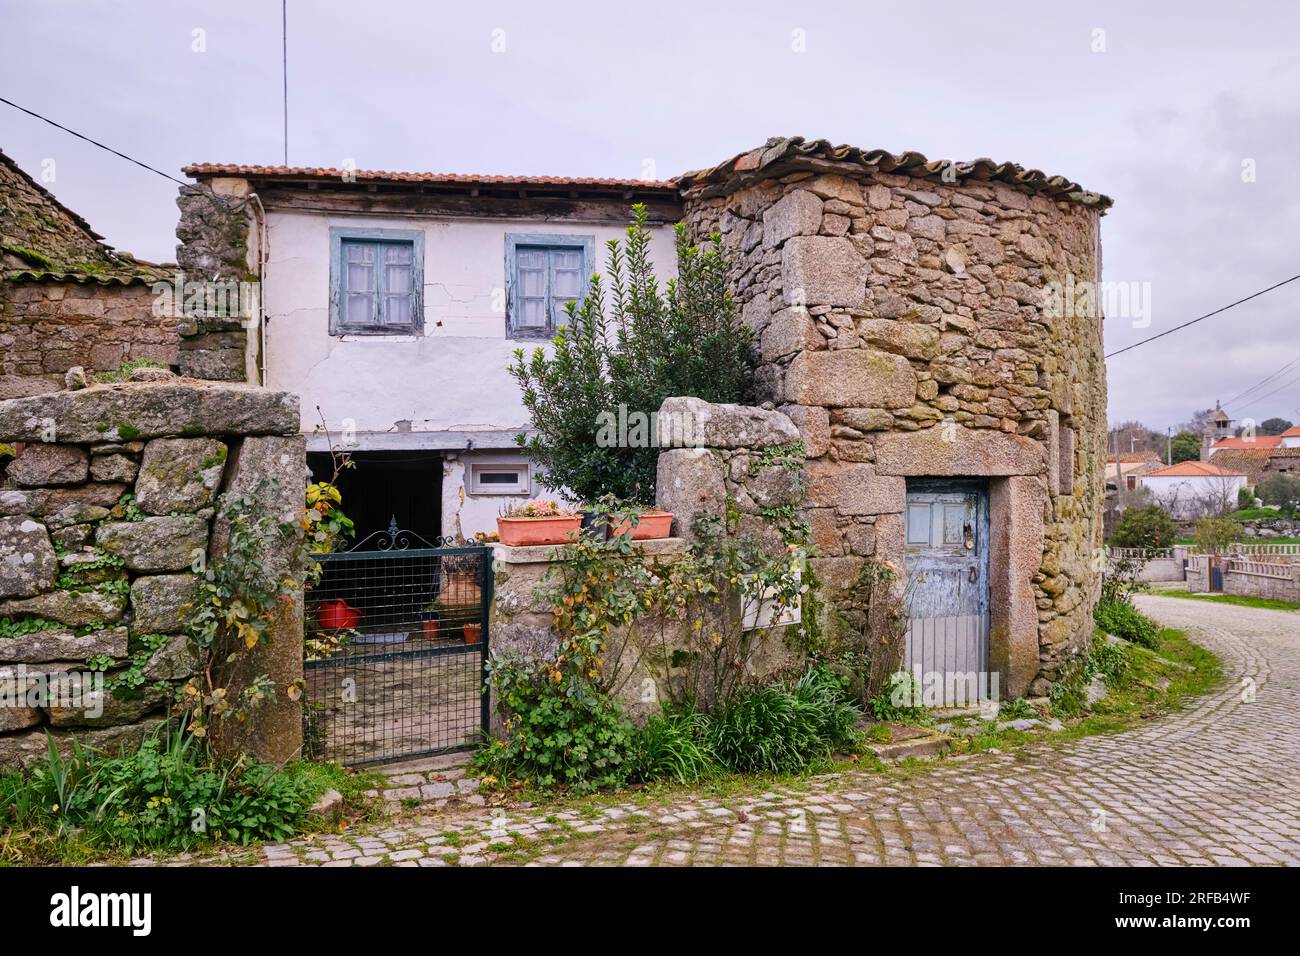 Maison traditionnelle à Aldeia Nova, Miranda do Douro. Tras-os-Montes, Portugal Banque D'Images